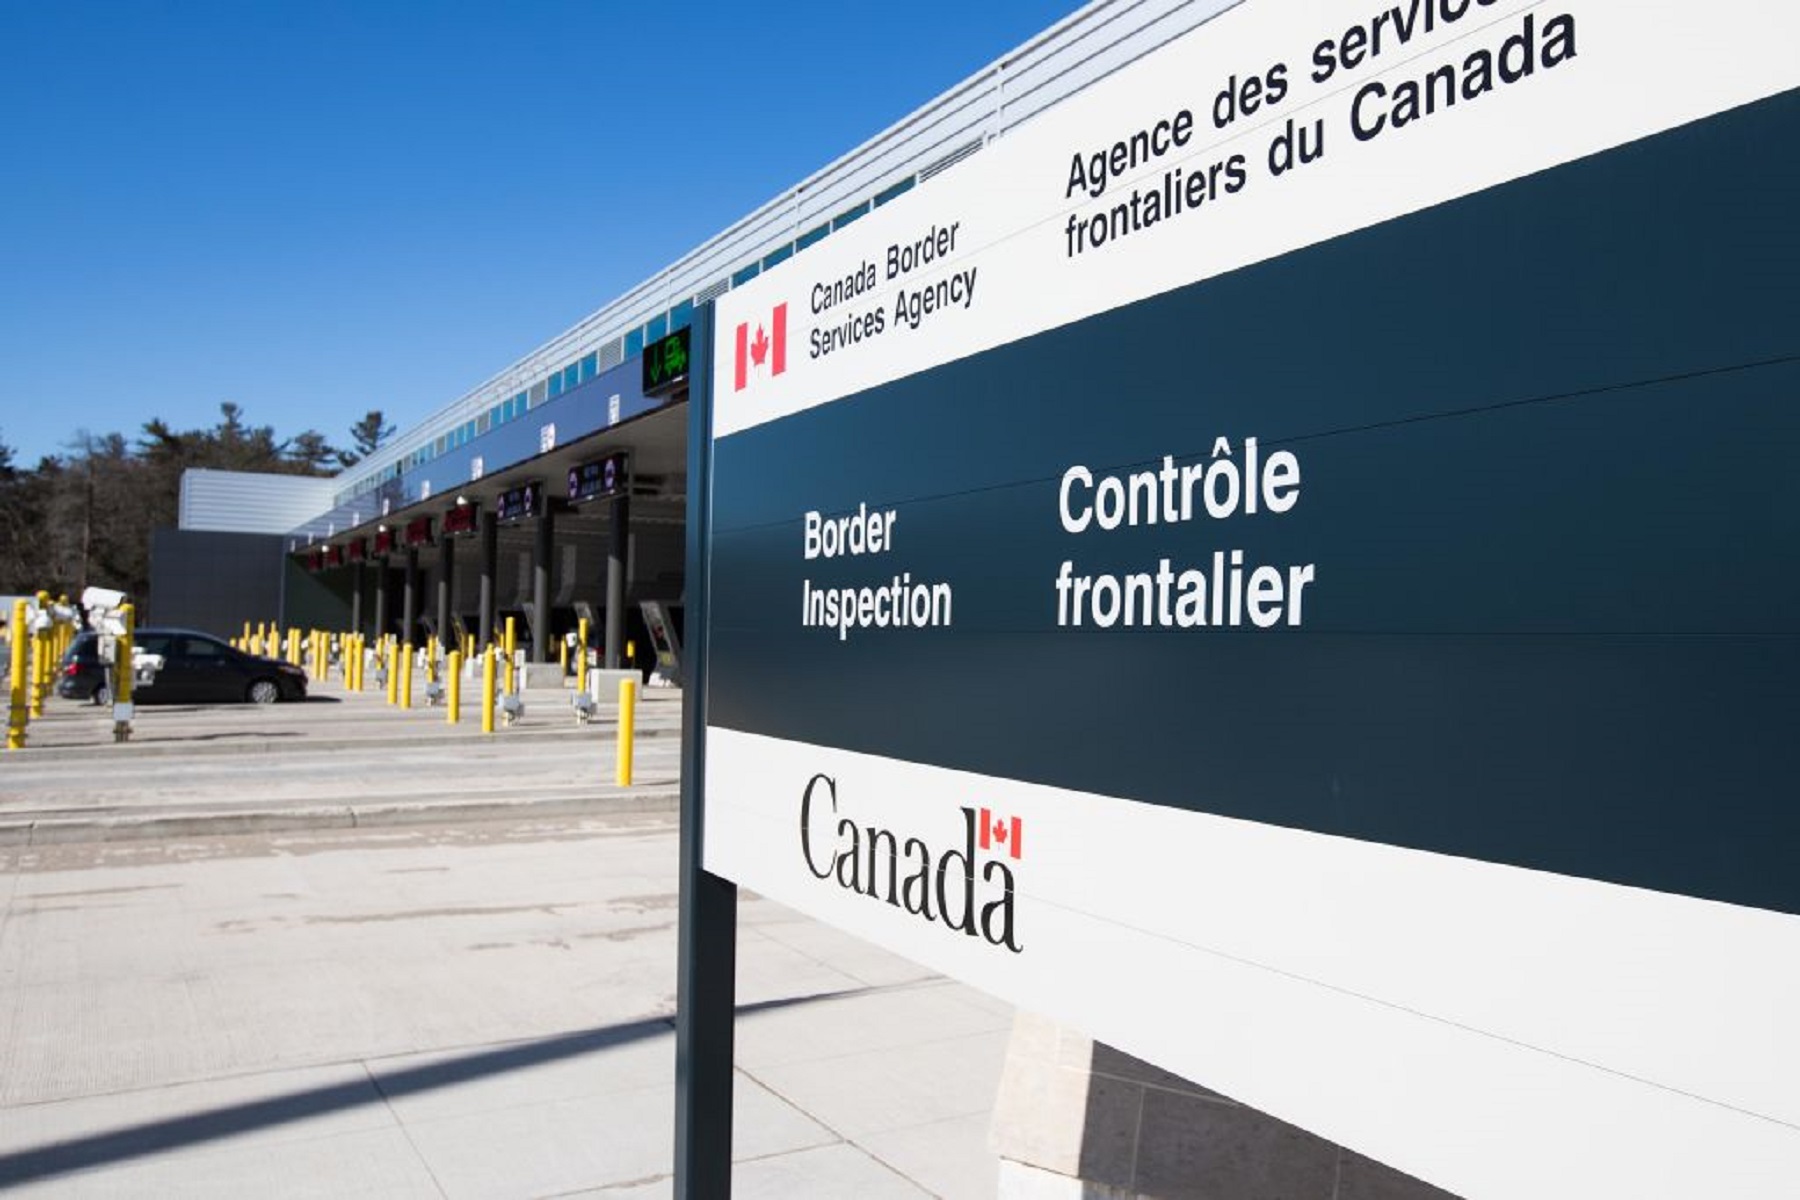 Καναδάς Justin Trudeau: Mπορεί να ανοίξει τα σύνορα για τους Αμερικανούς έως τα μέσα Αυγούστου εάν έχει εμβολιαστεί πλήρως